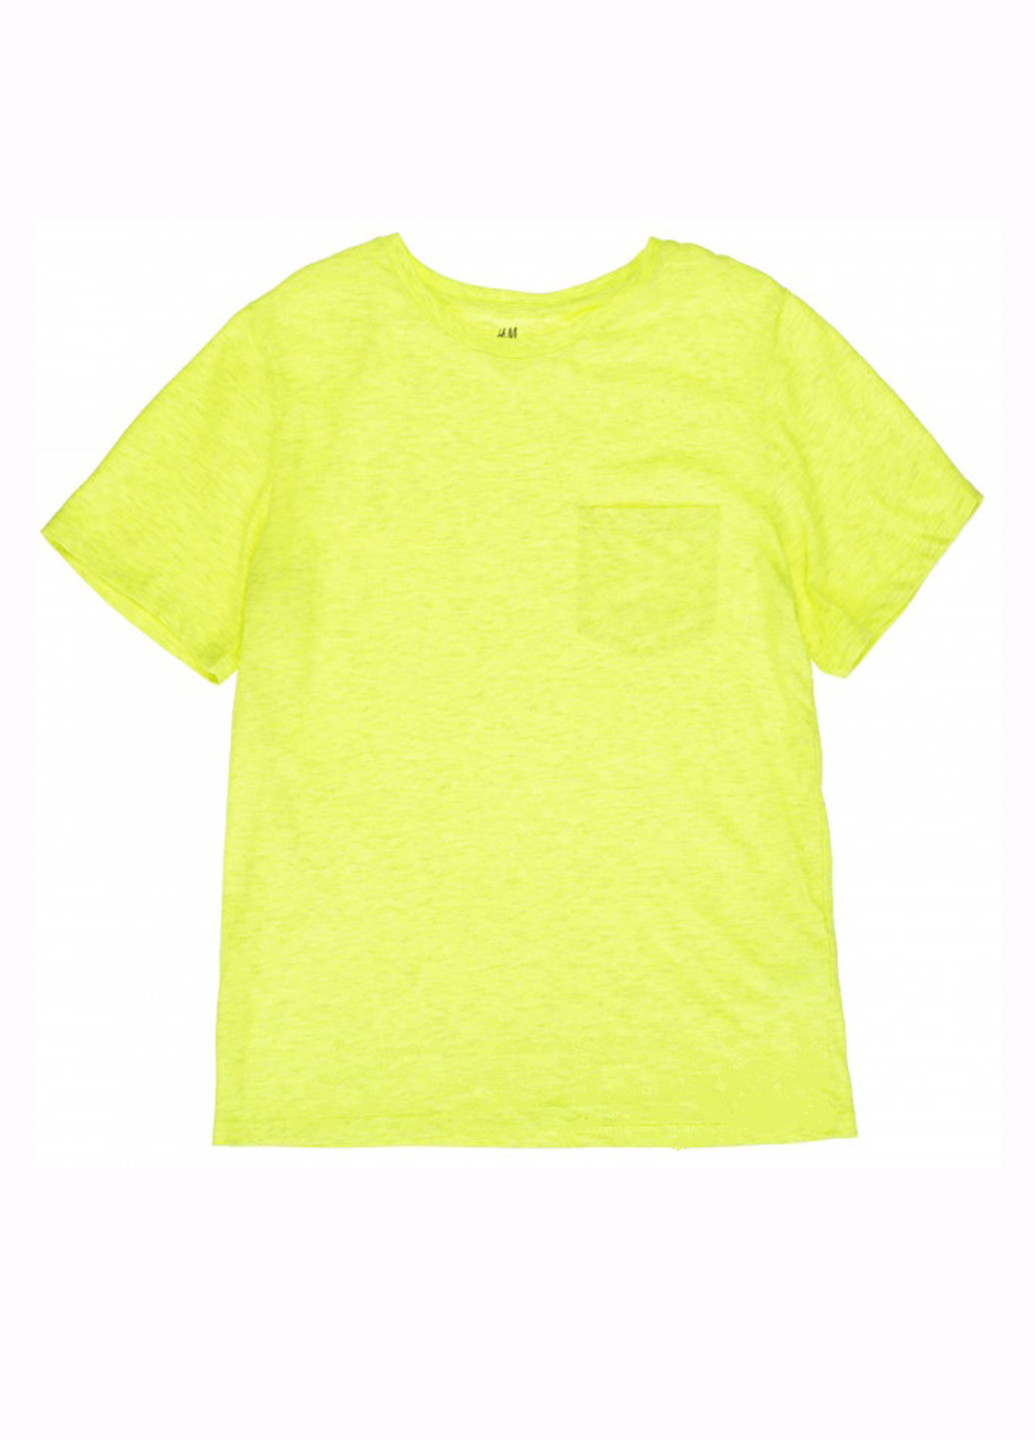 Салатова літня футболка з коротким рукавом H&M